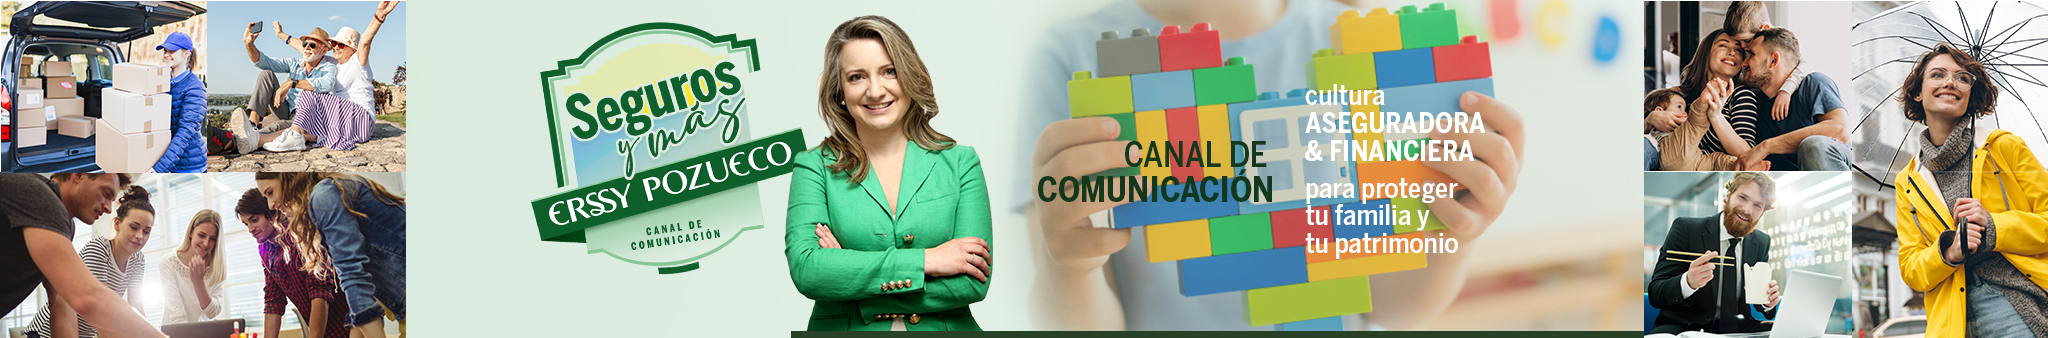 Canal de comunicación Seguros y Más - Cultura aseguradora y financiera Catarina Valdés Pozueco